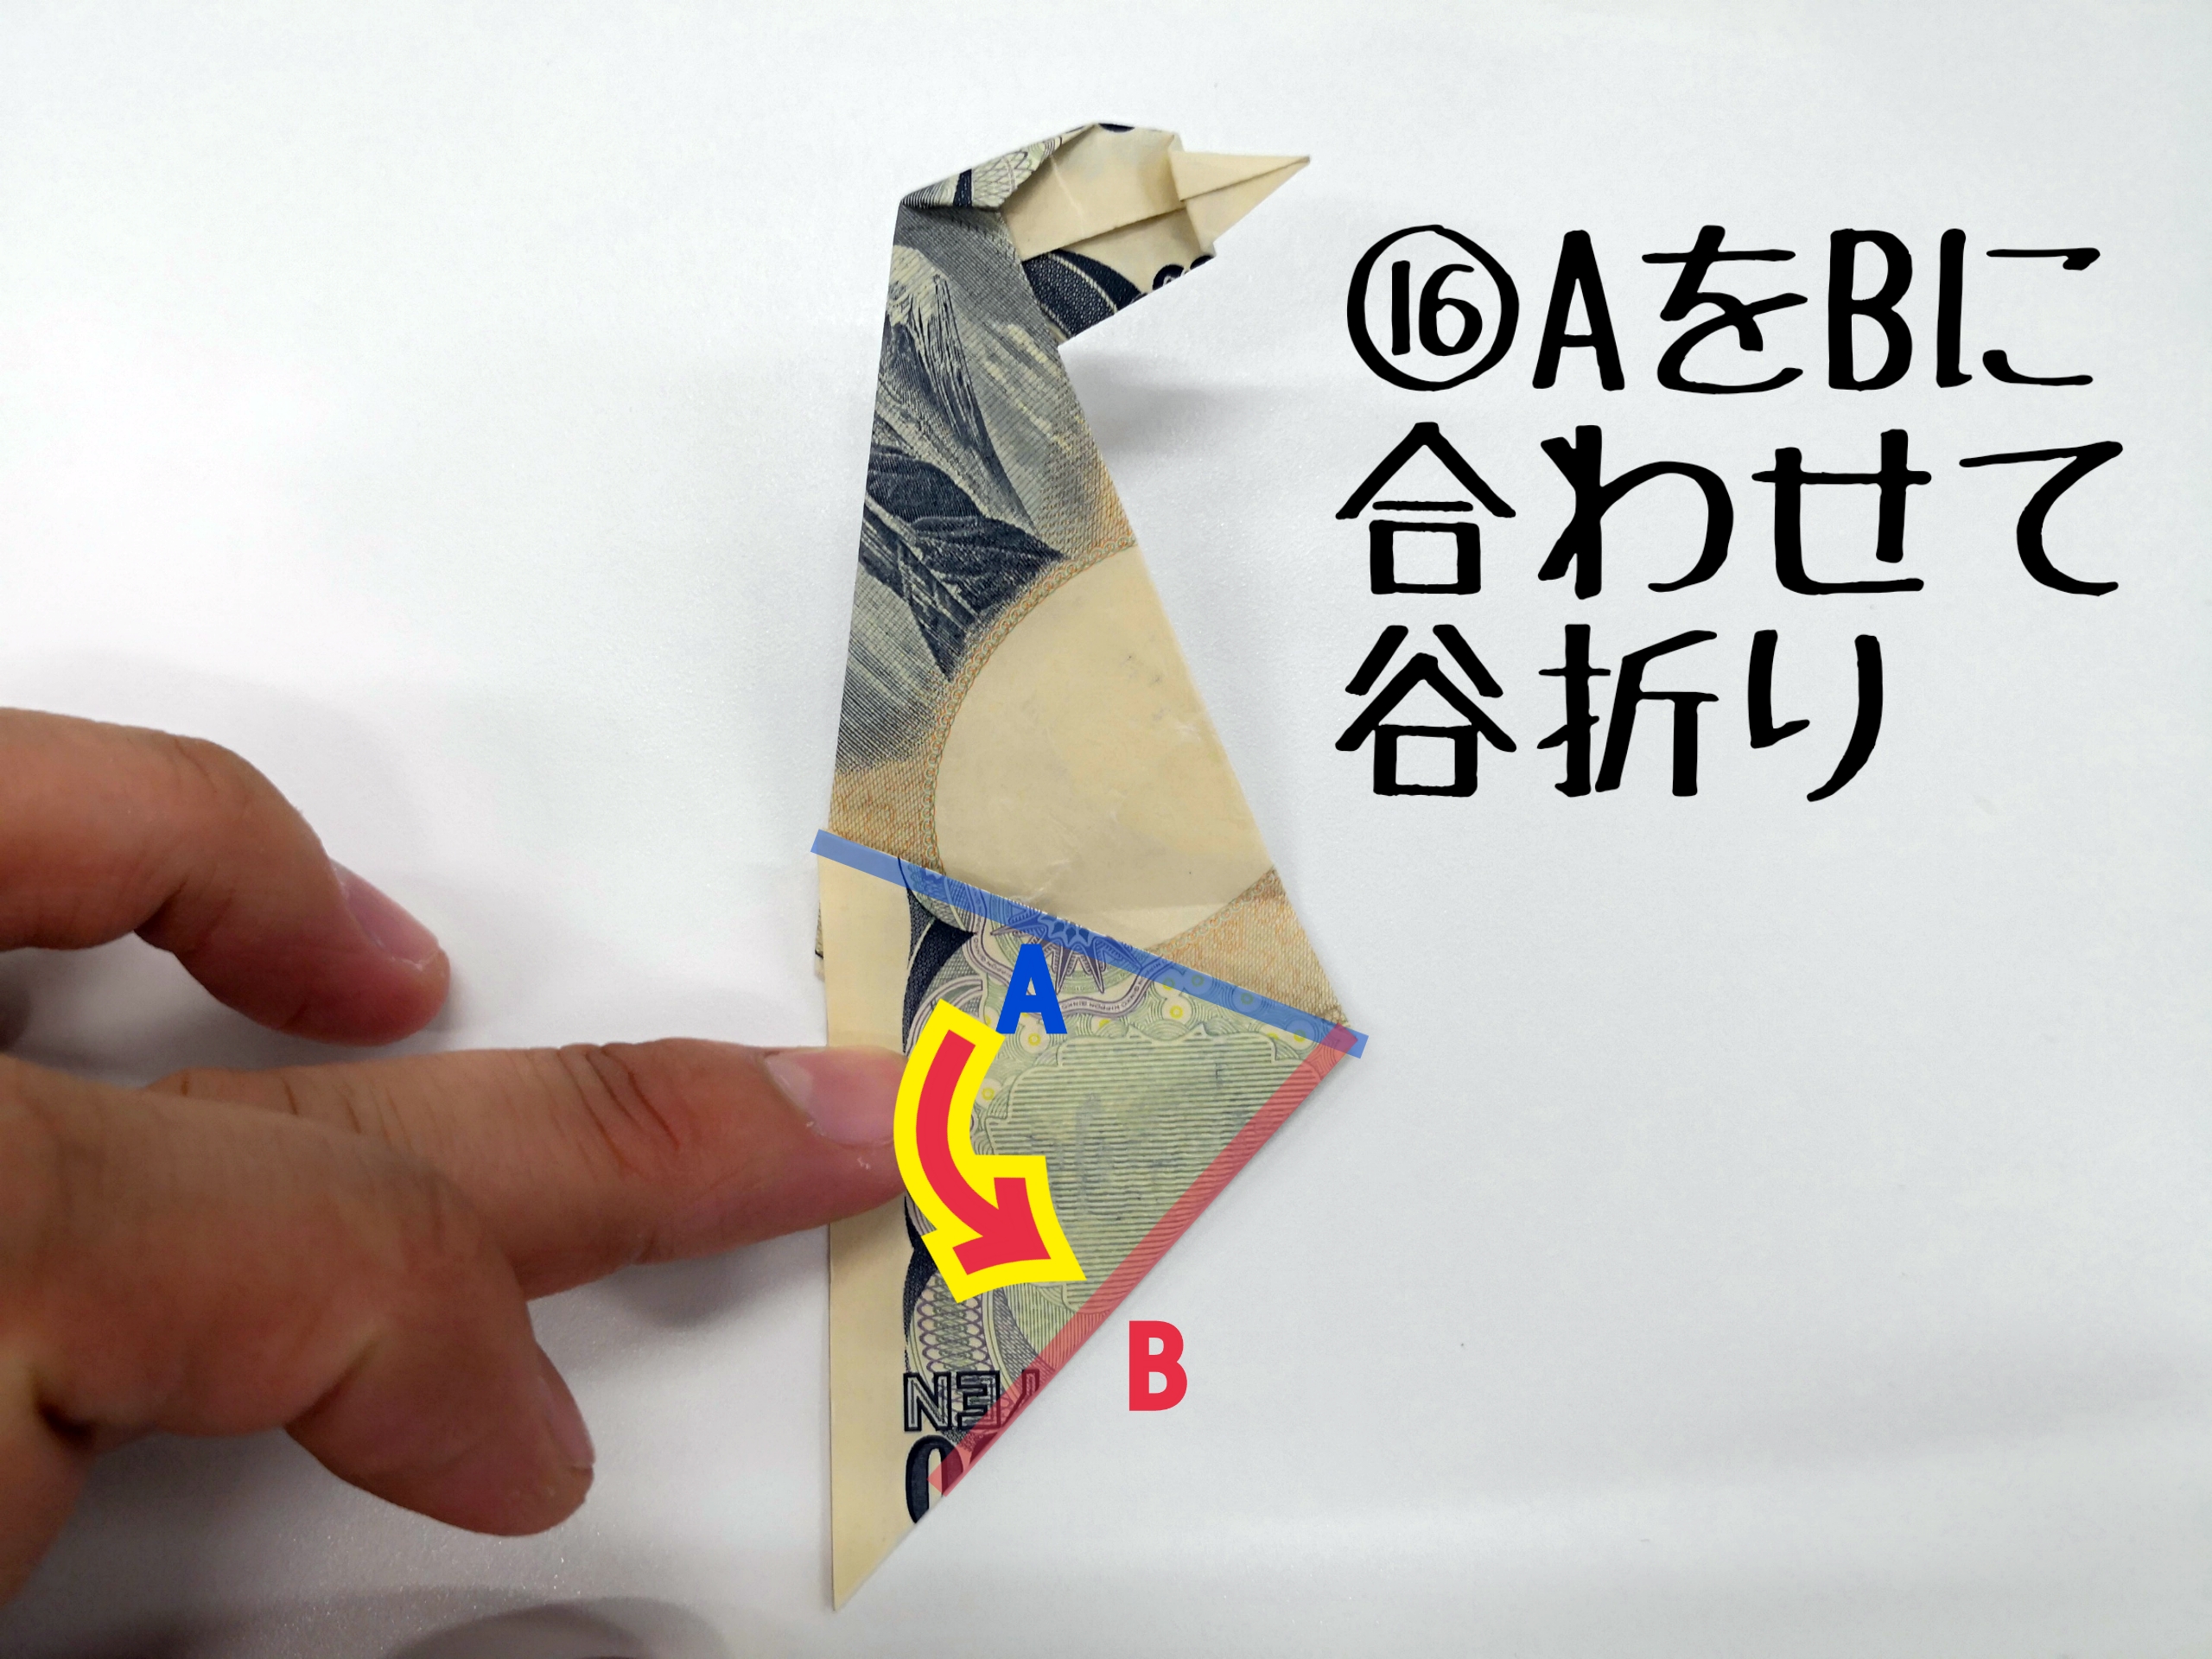 Piro Money Origami World